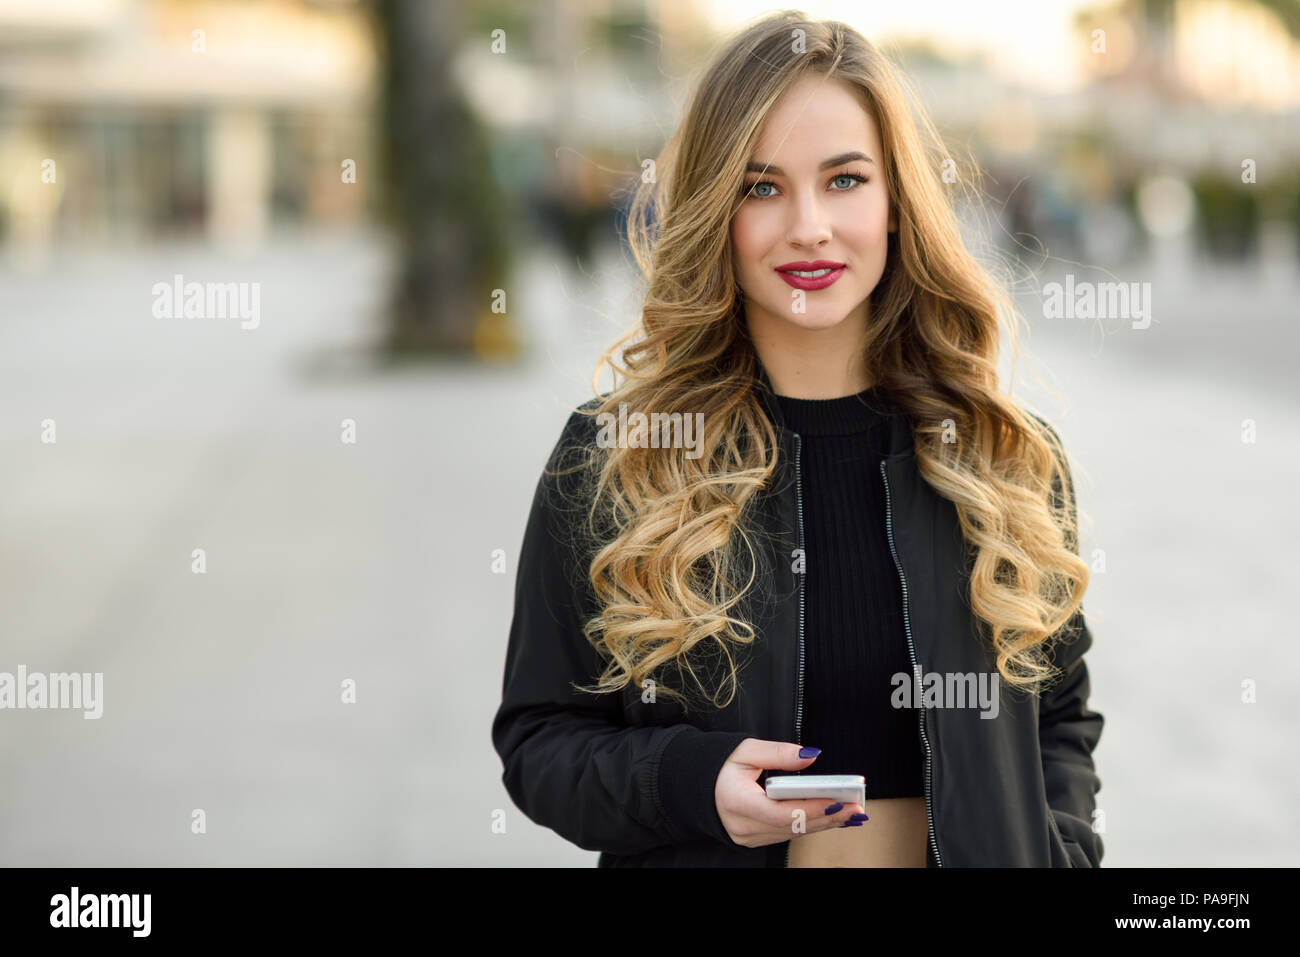 Blonde woman texting avec son smart phone en contexte urbain. Belle jeune fille portant veste noire marchant dans la rue. Jolie femme russe Banque D'Images